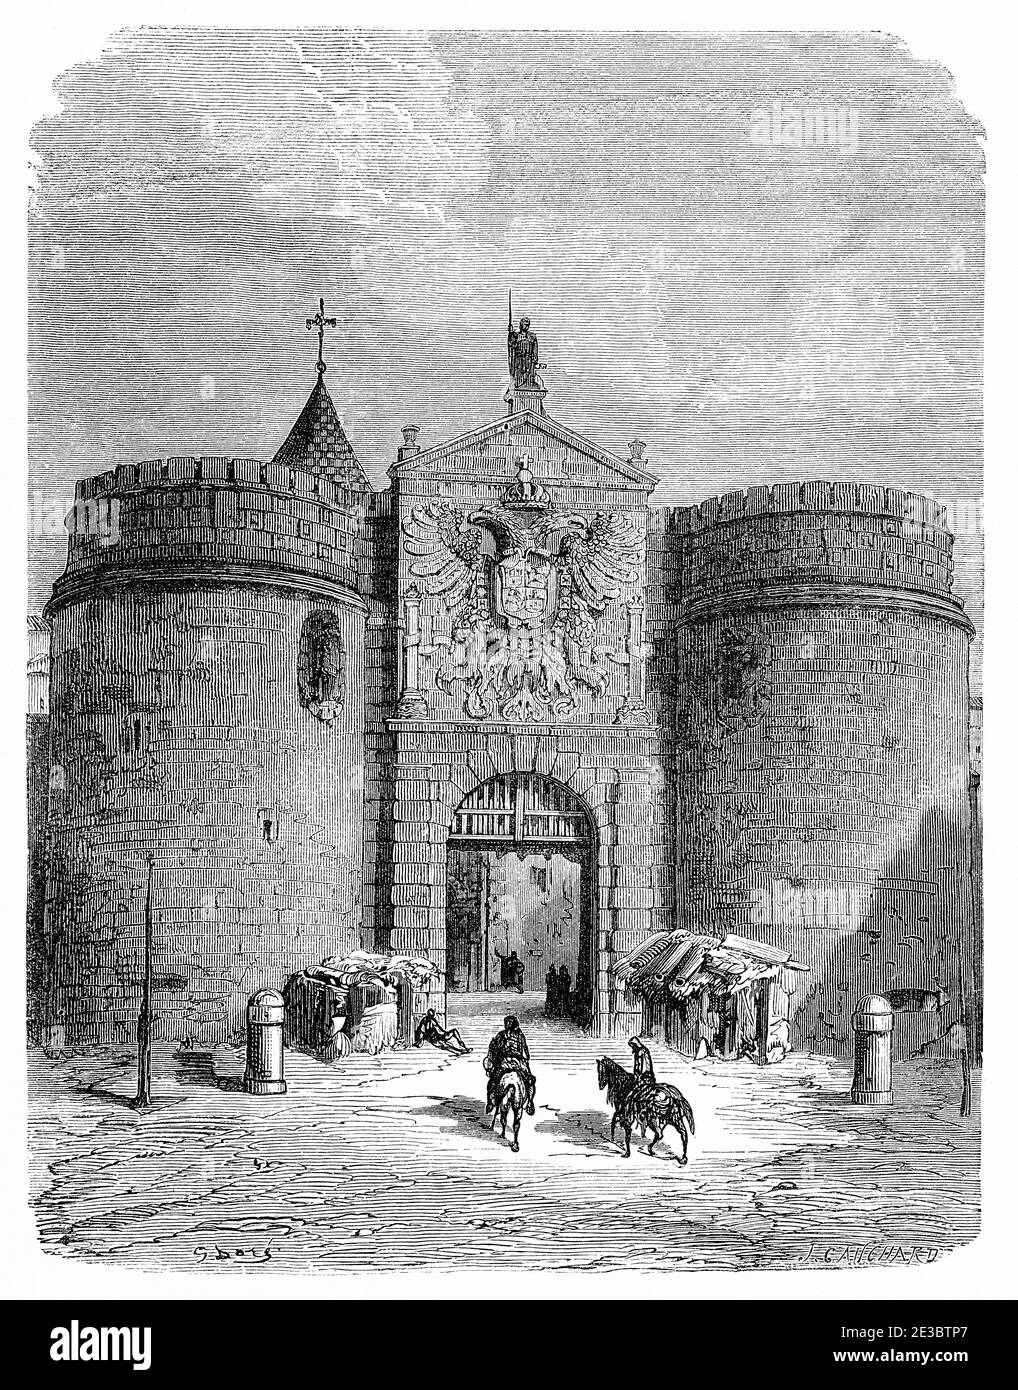 Antico ingresso alla città nel 19 ° secolo. Alfonso VI Gate o Old Hinge Gate. Toledo. Castilla la Mancha. Spagna, Europa. Illustrazione incisa del 19 ° secolo, El Mundo en la mano 1878 Foto Stock